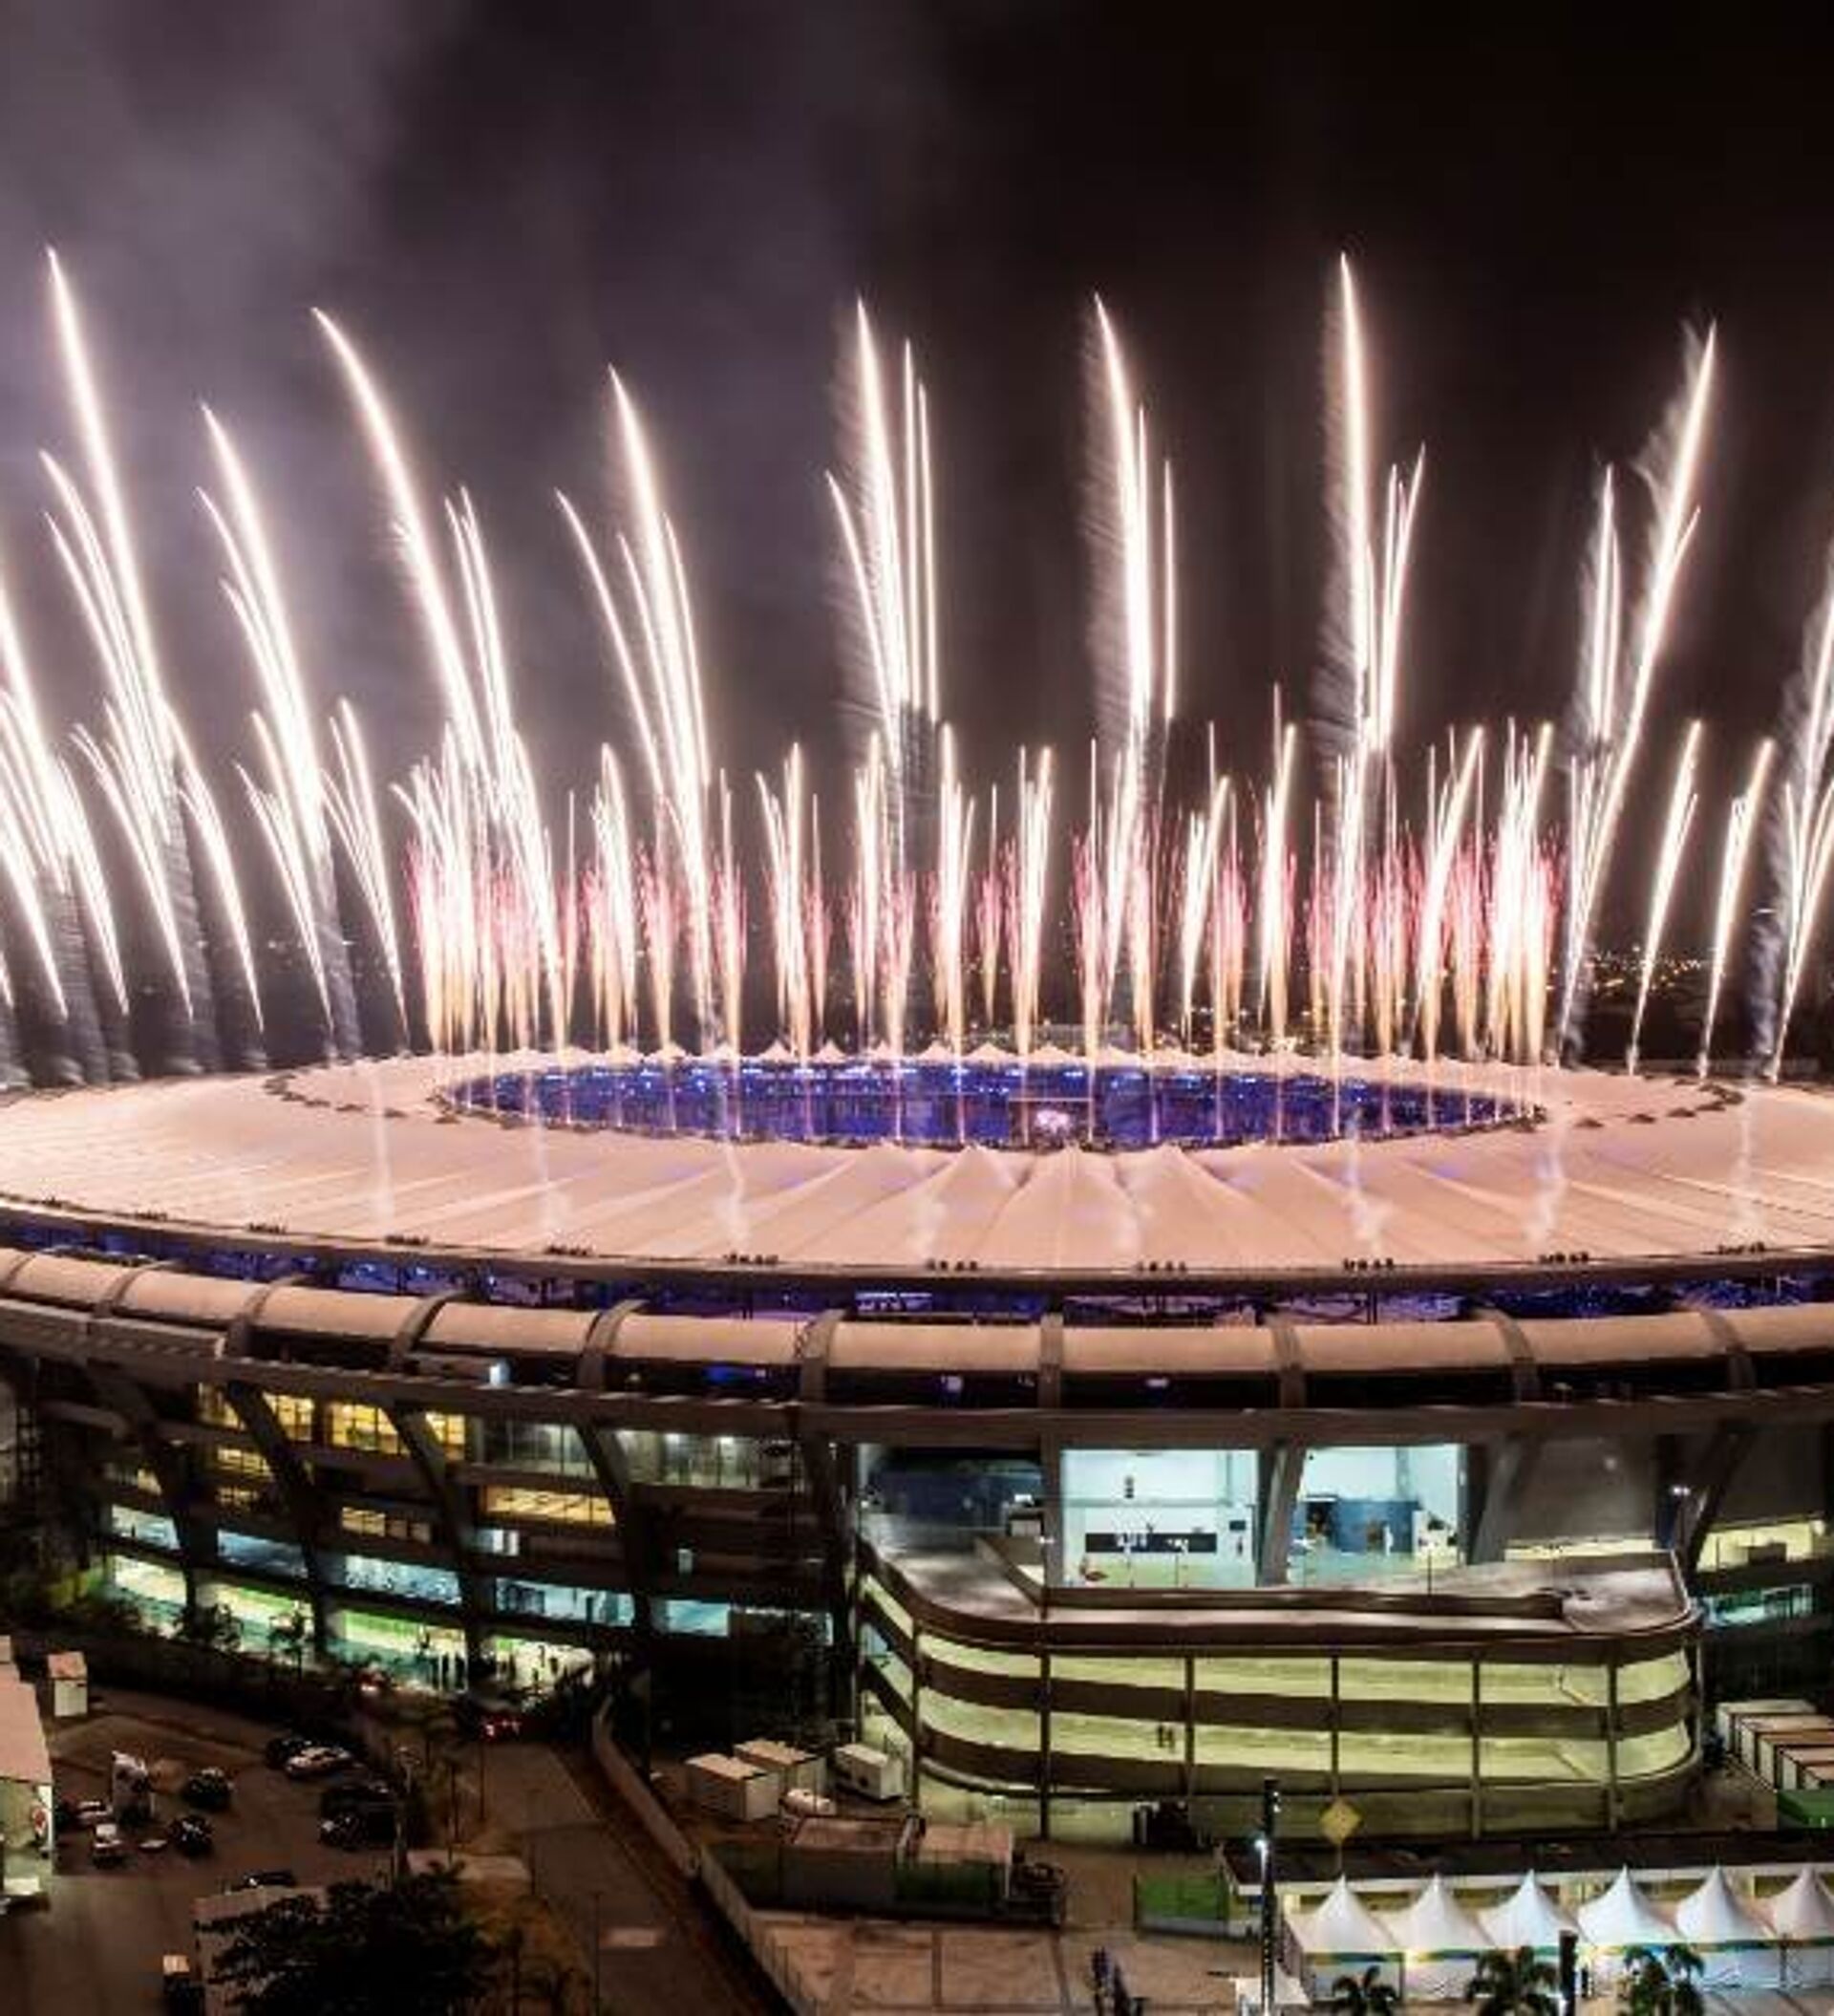 Estas cidades sediarão os Jogos Olímpicos de 2024 e 2028 - 31.05.2017,  Sputnik Brasil